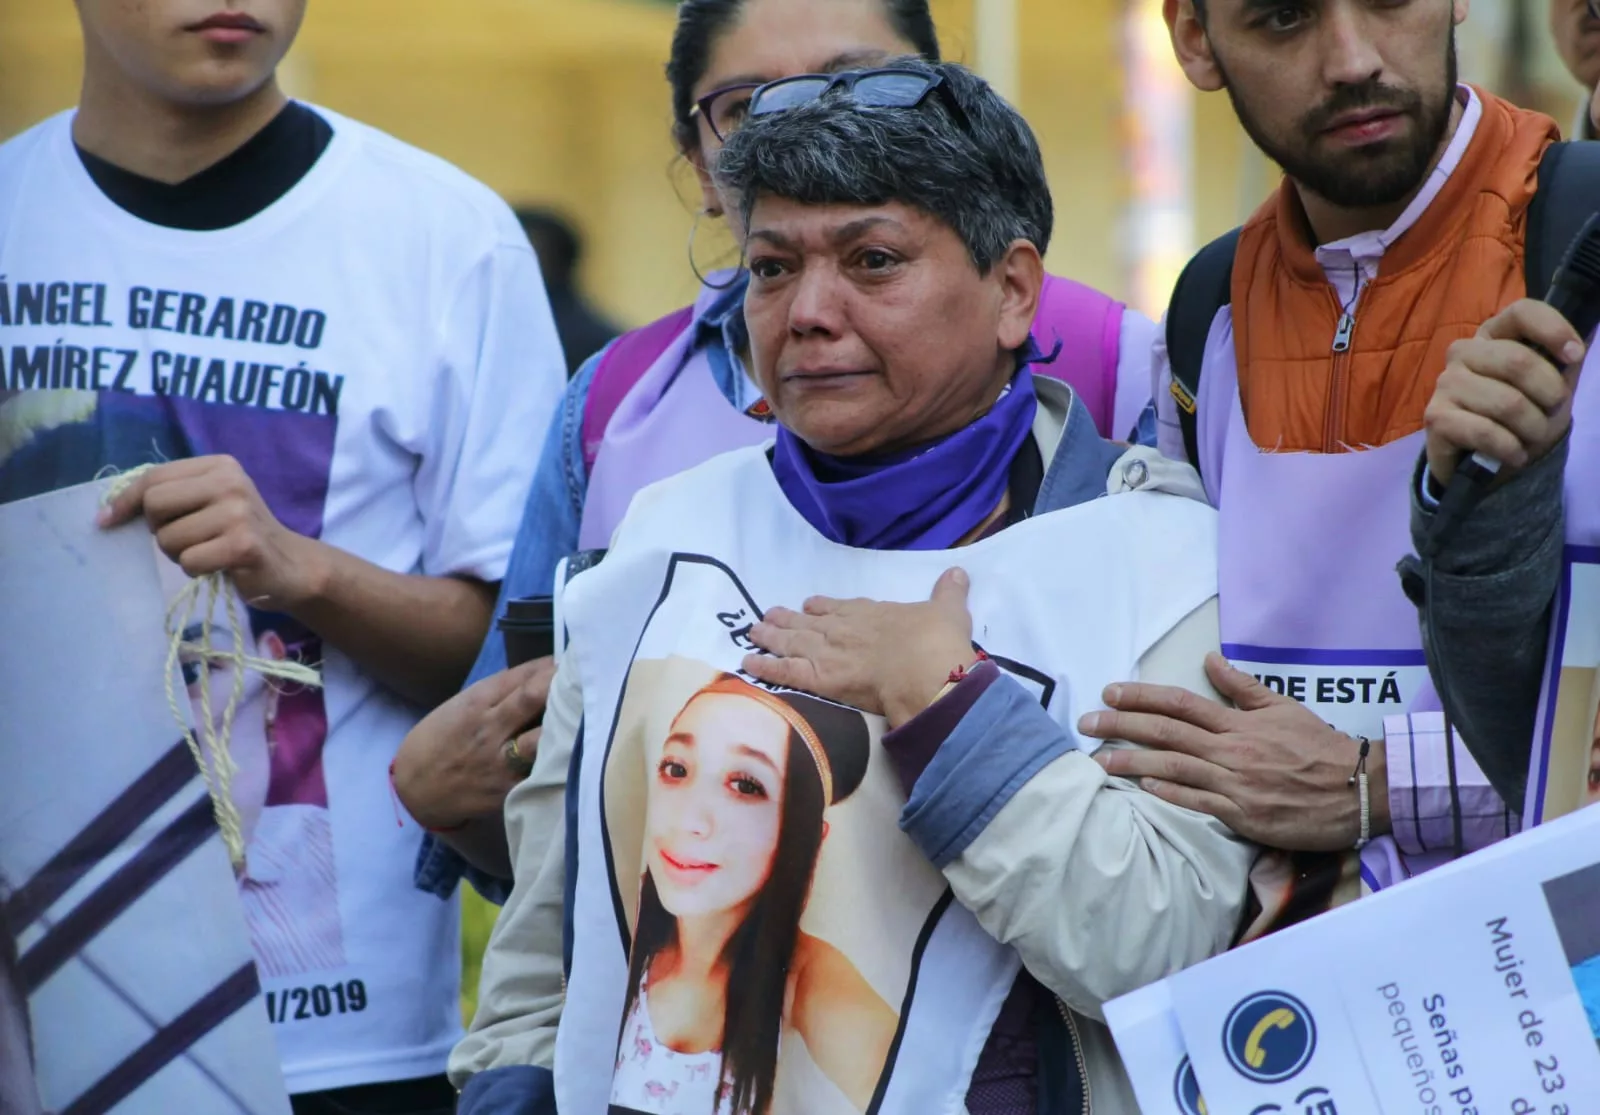 A 6 años de la desaparición de Pamela Gallardo familiares se manifestaron a las afueras de la Fiscalía CDMX